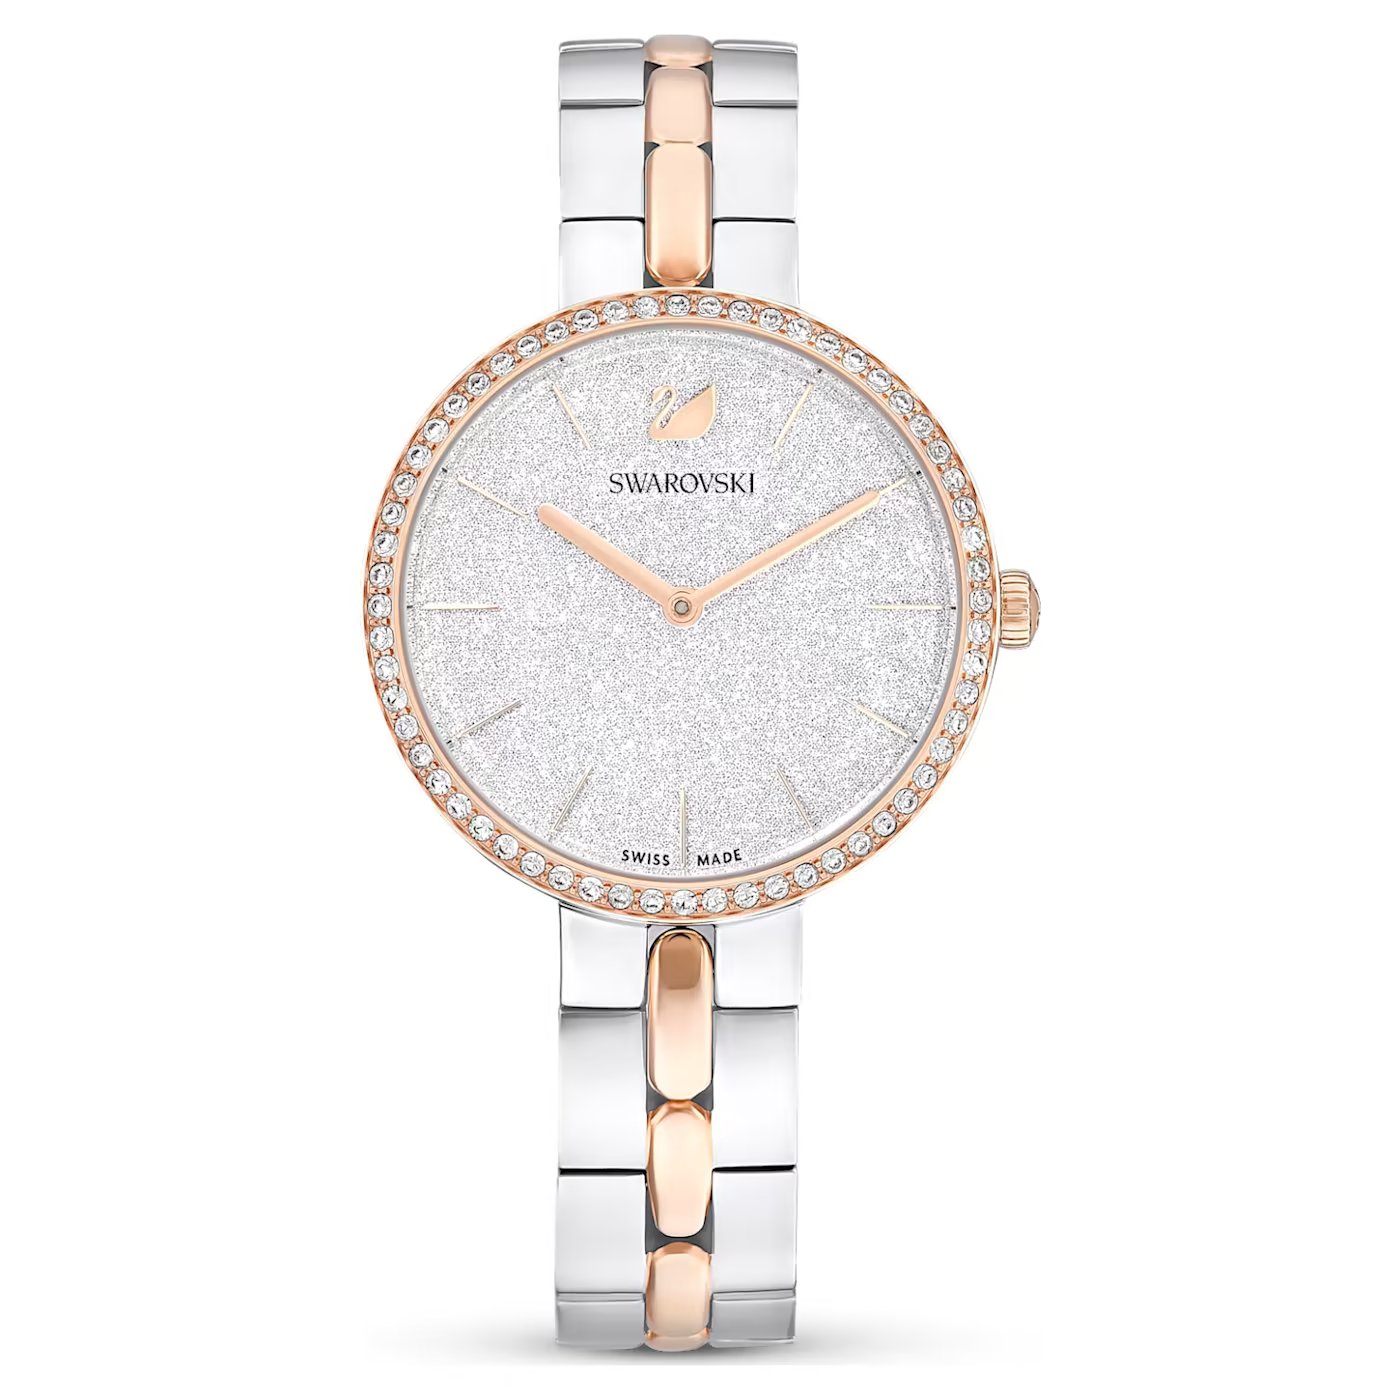 633186eec2587_px-cosmopolitan-watch--swiss-made--metal-bracelet--white--rose-gold-tone-finish-swarovski-5644081.jpg